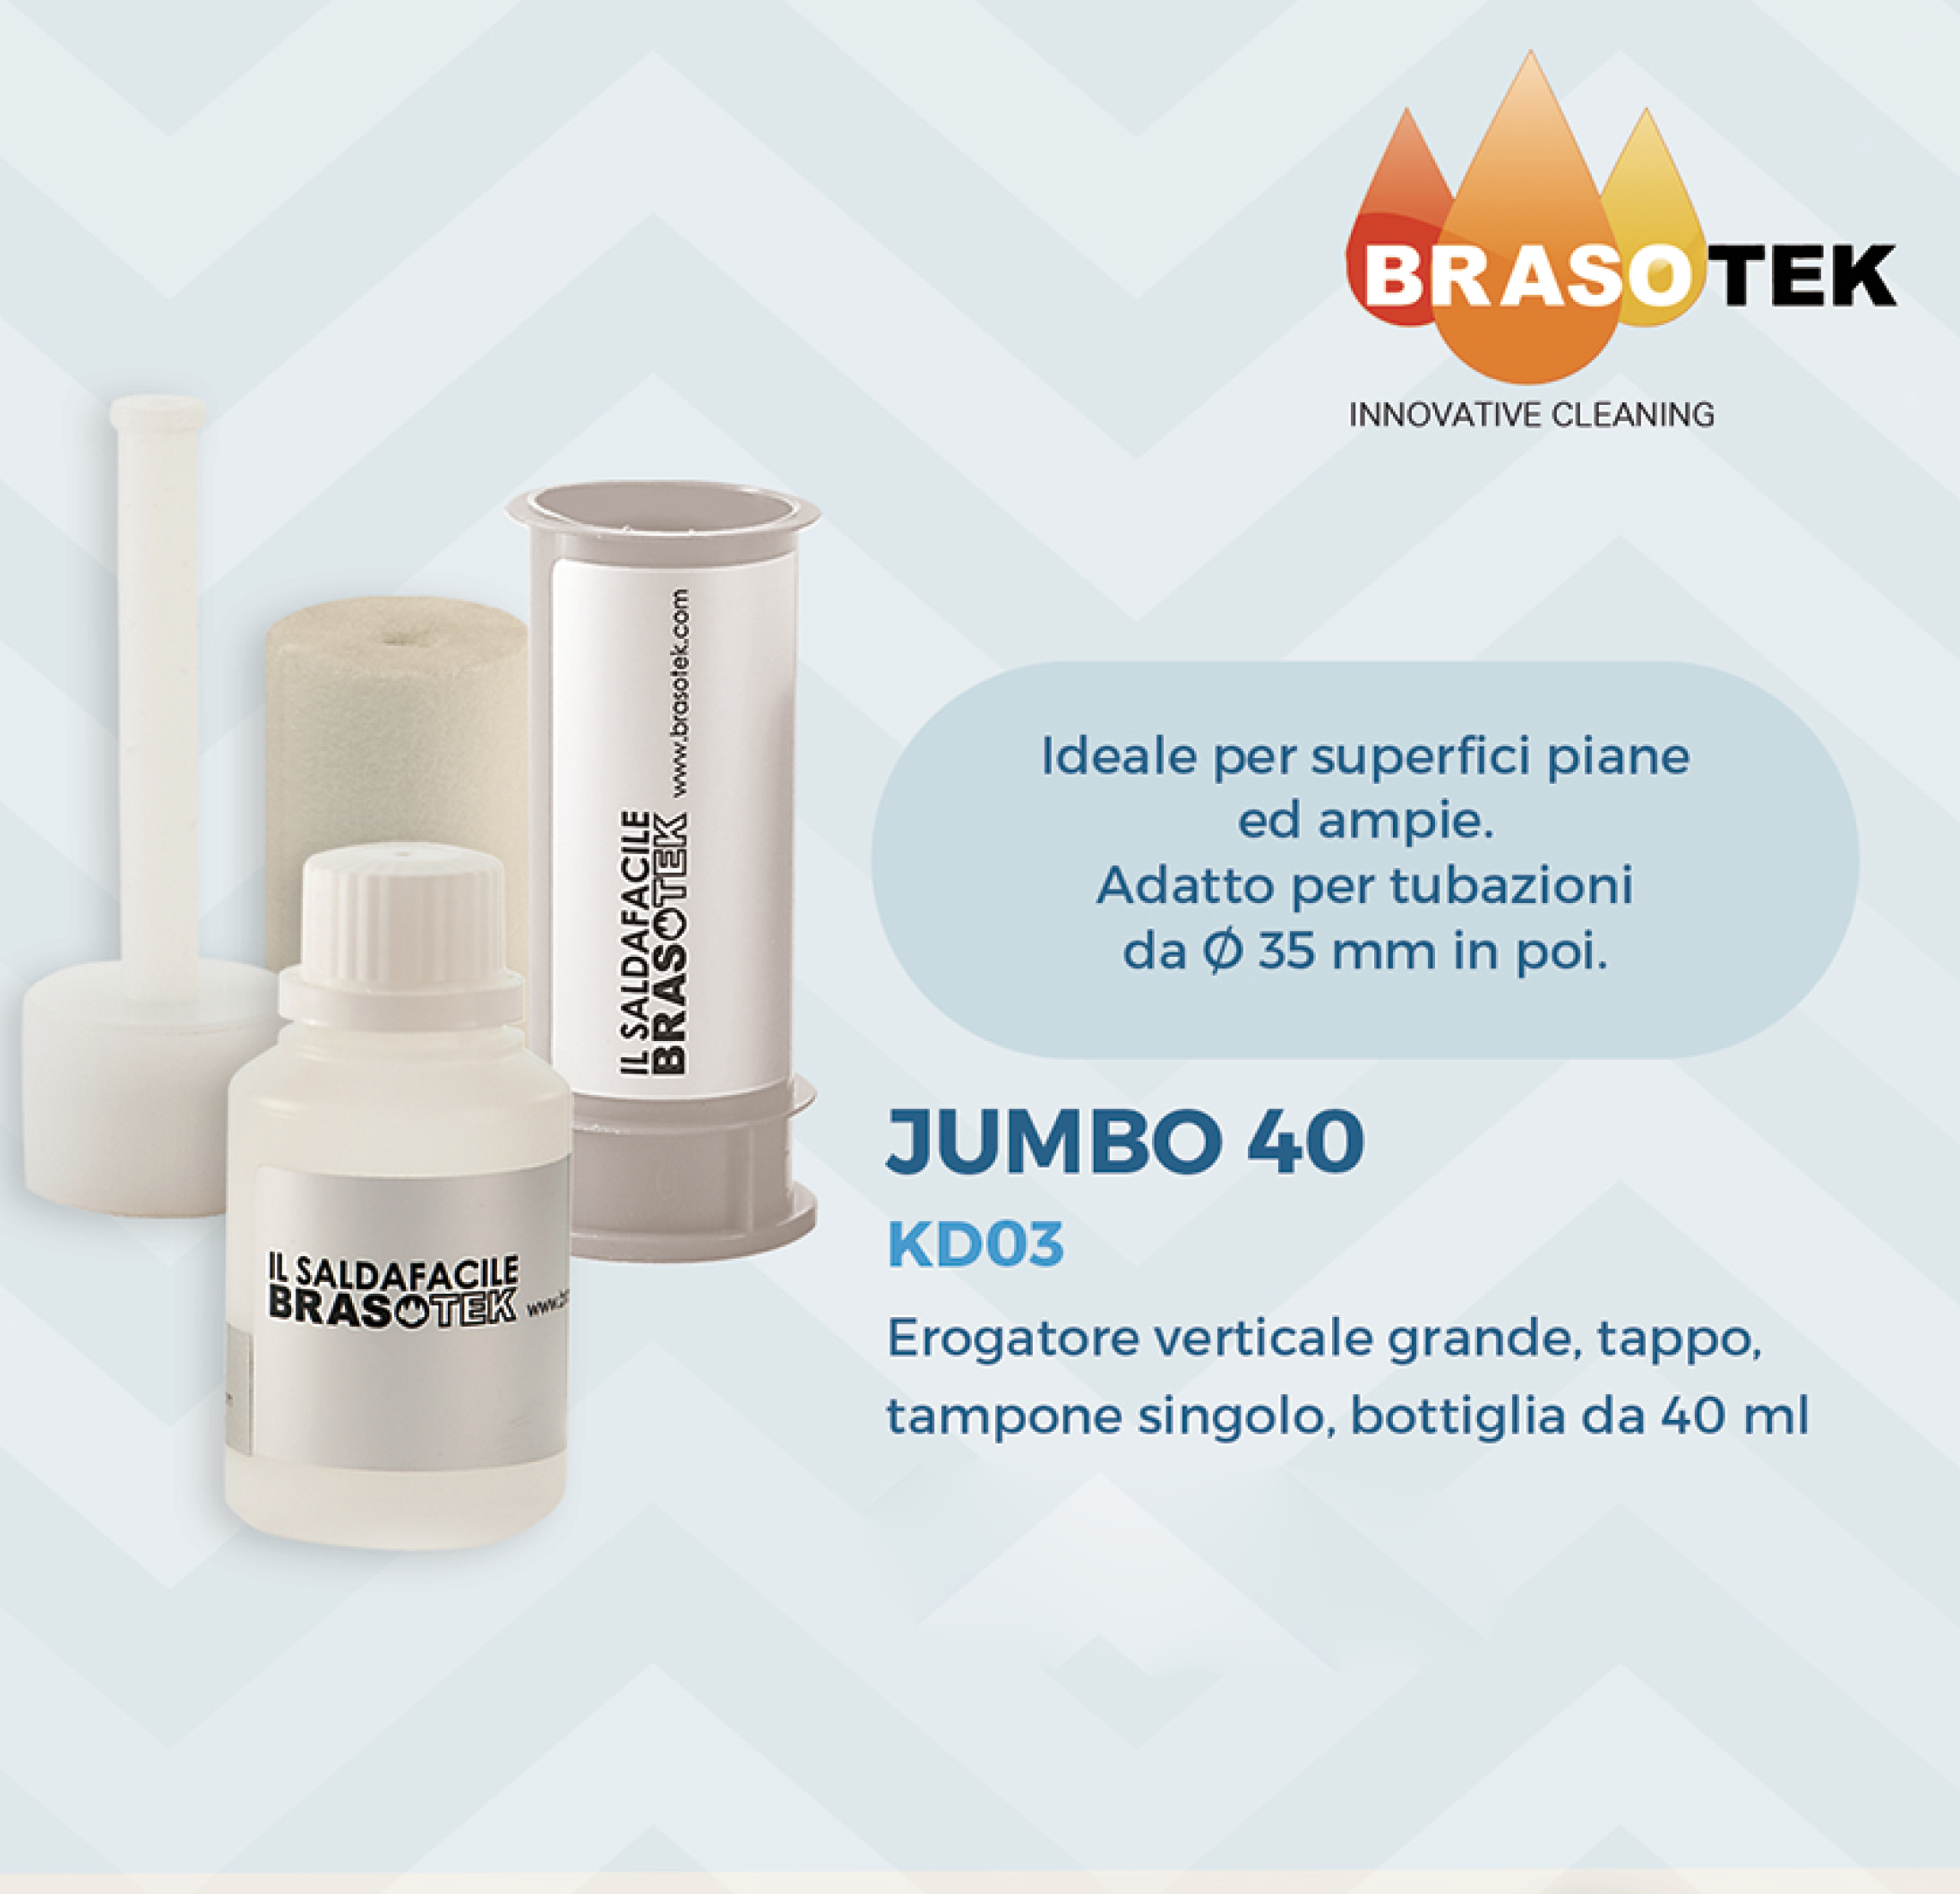 Brasotek - Kit Jumbo 40 codice KD03 - Composto da 1 flacone da 40 ml, erogatore verticale grande, tampone, tappo ermetico - adatto per tubi diametro oltre 35 mm. - Foto 1 